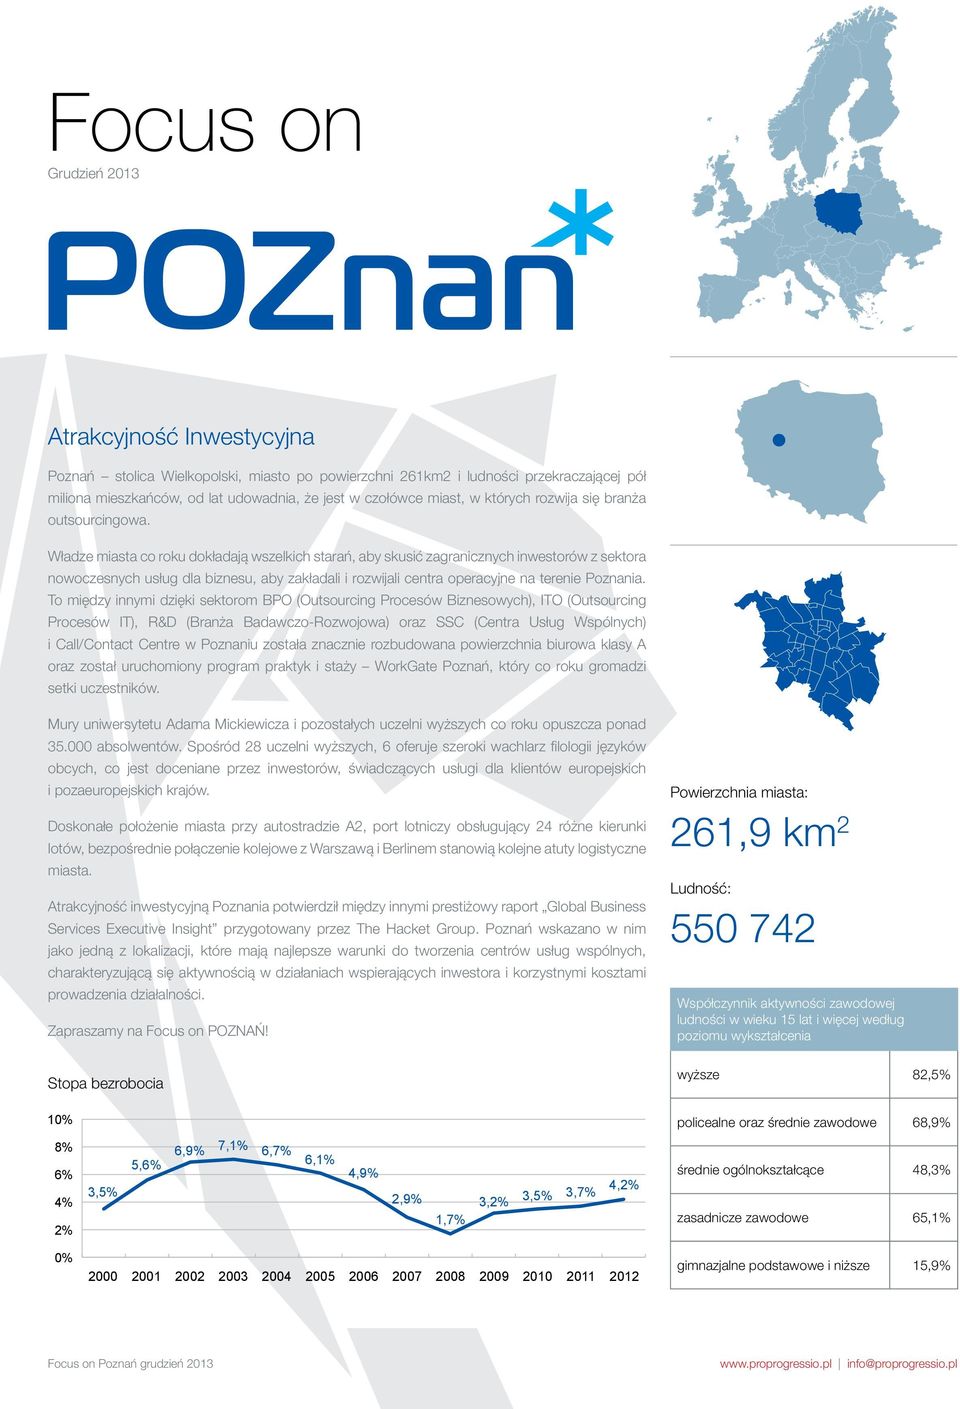 Władze miasta co roku dokładają wszelkich starań, aby skusić zagranicznych inwestorów z sektora nowoczesnych usług dla biznesu, aby zakładali i rozwijali centra operacyjne na terenie Poznania.